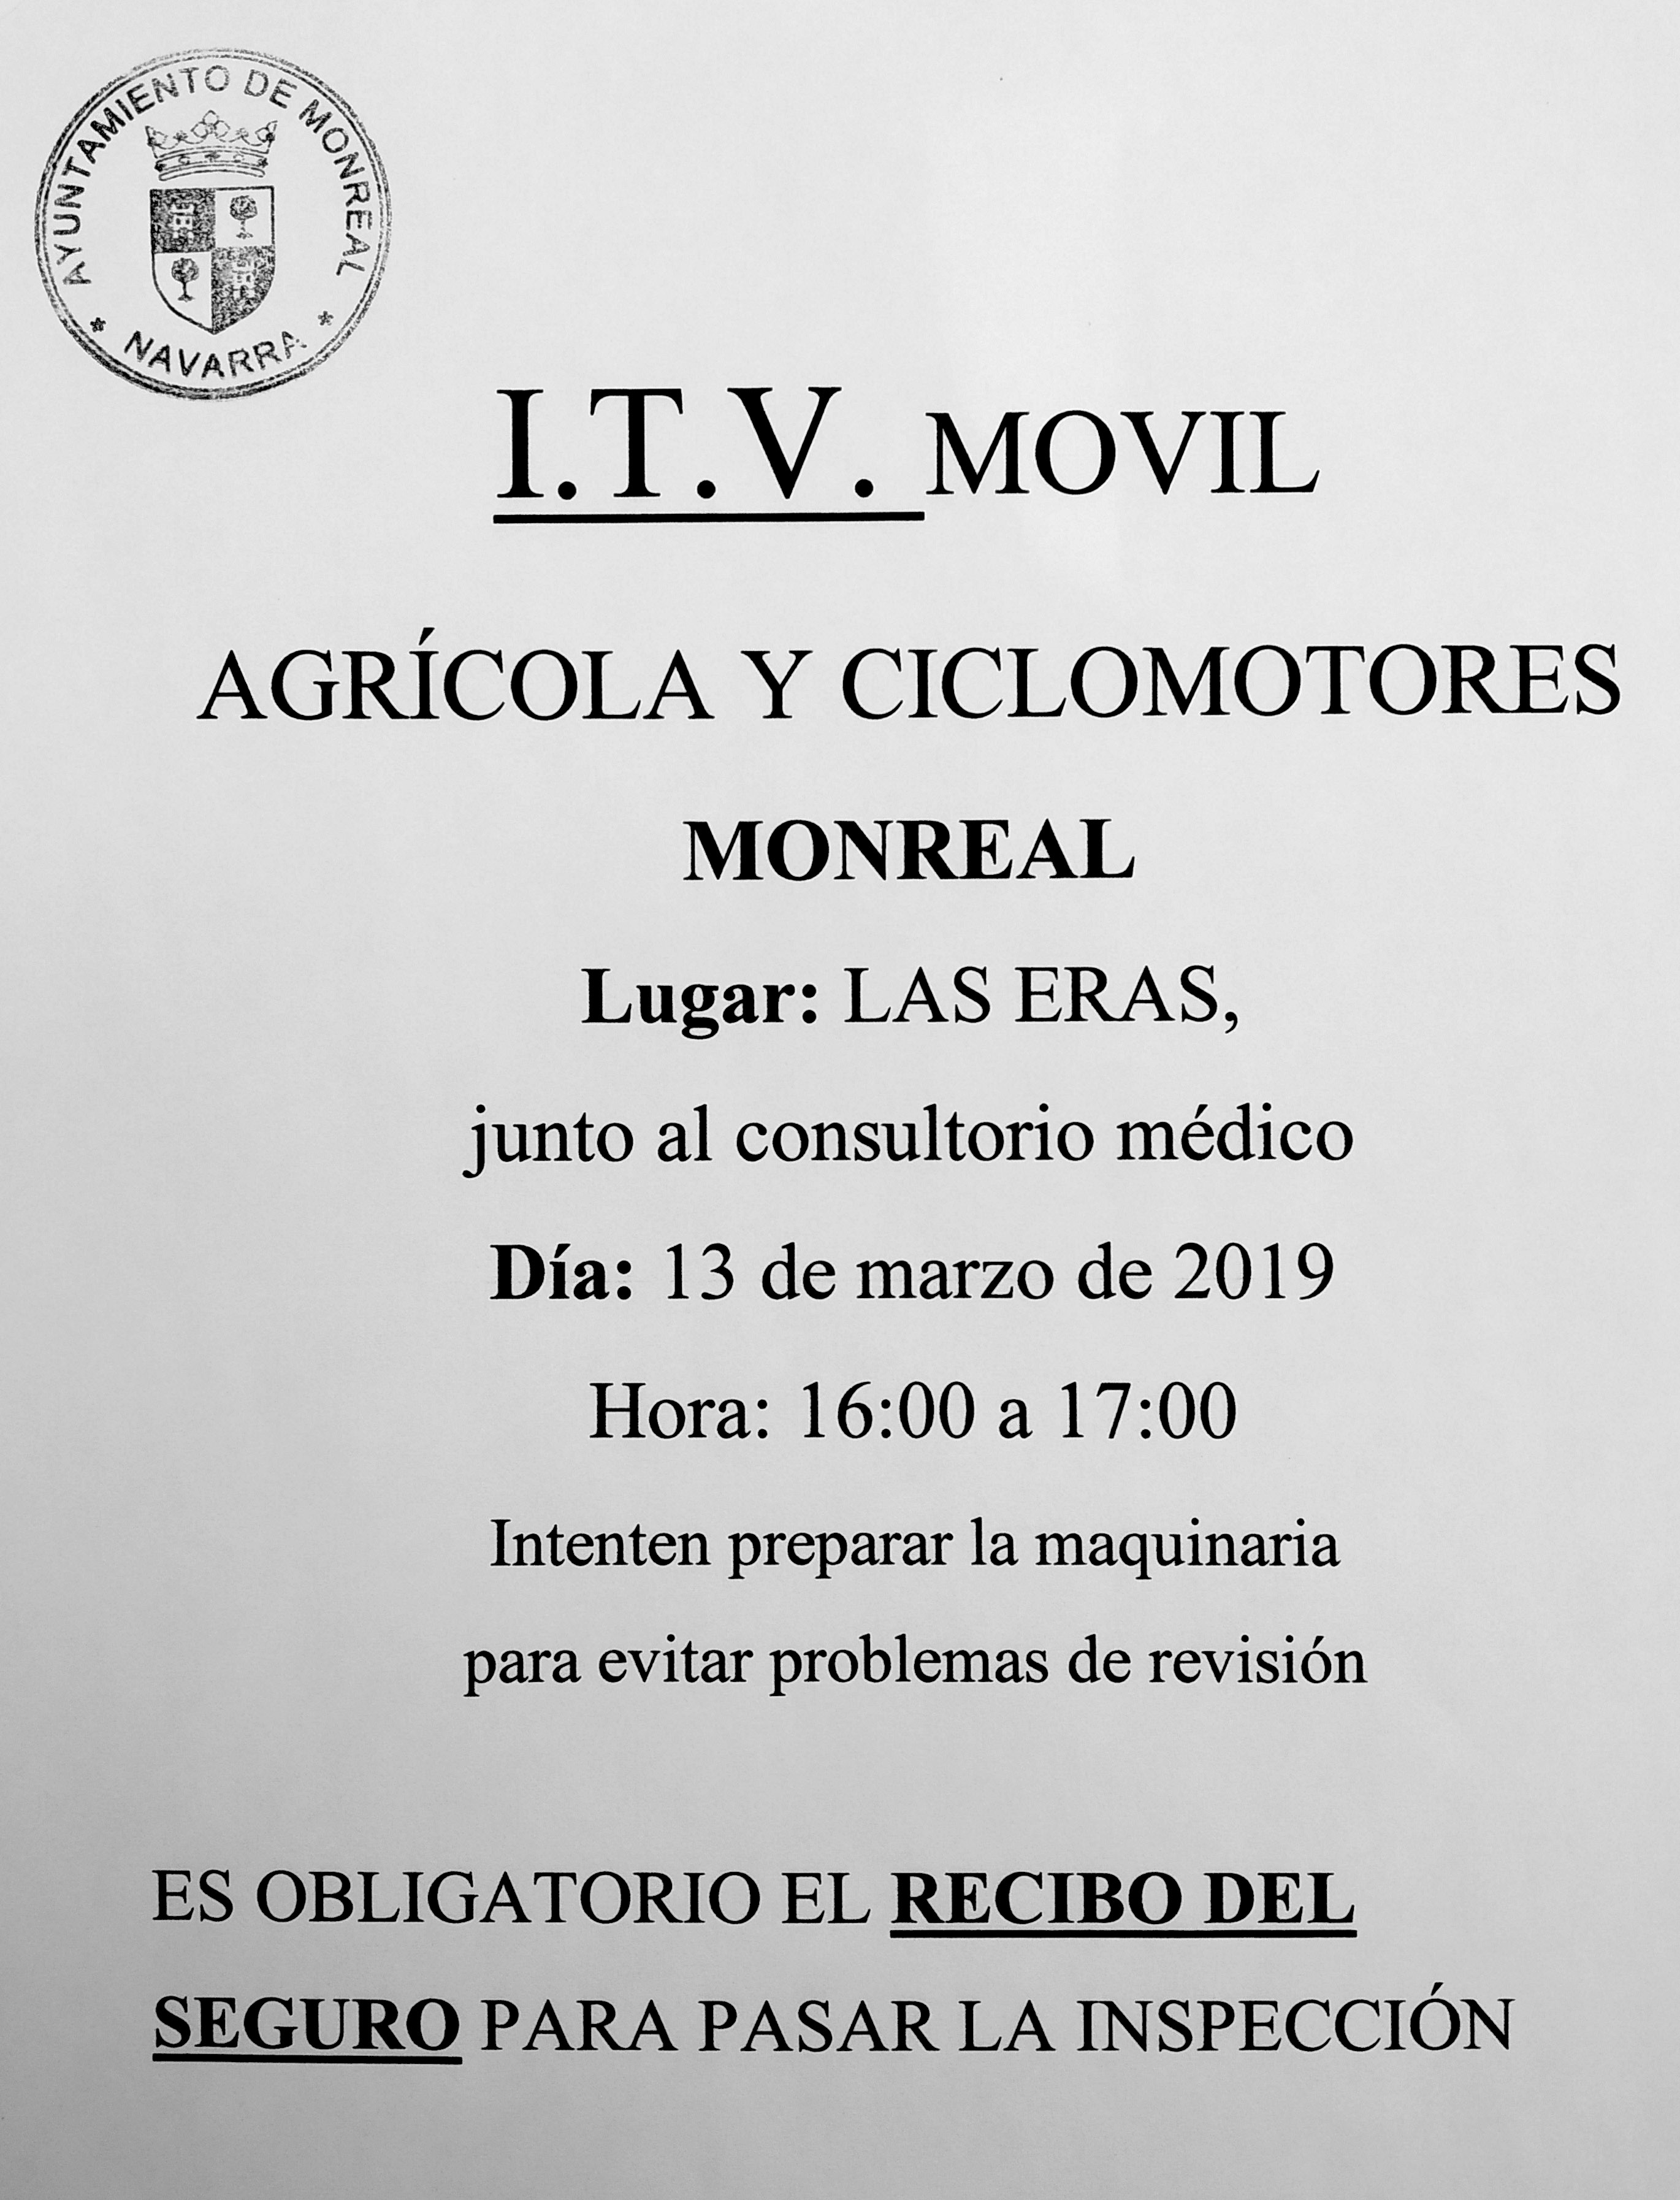 ITV Móvil agrícola y ciclomotores